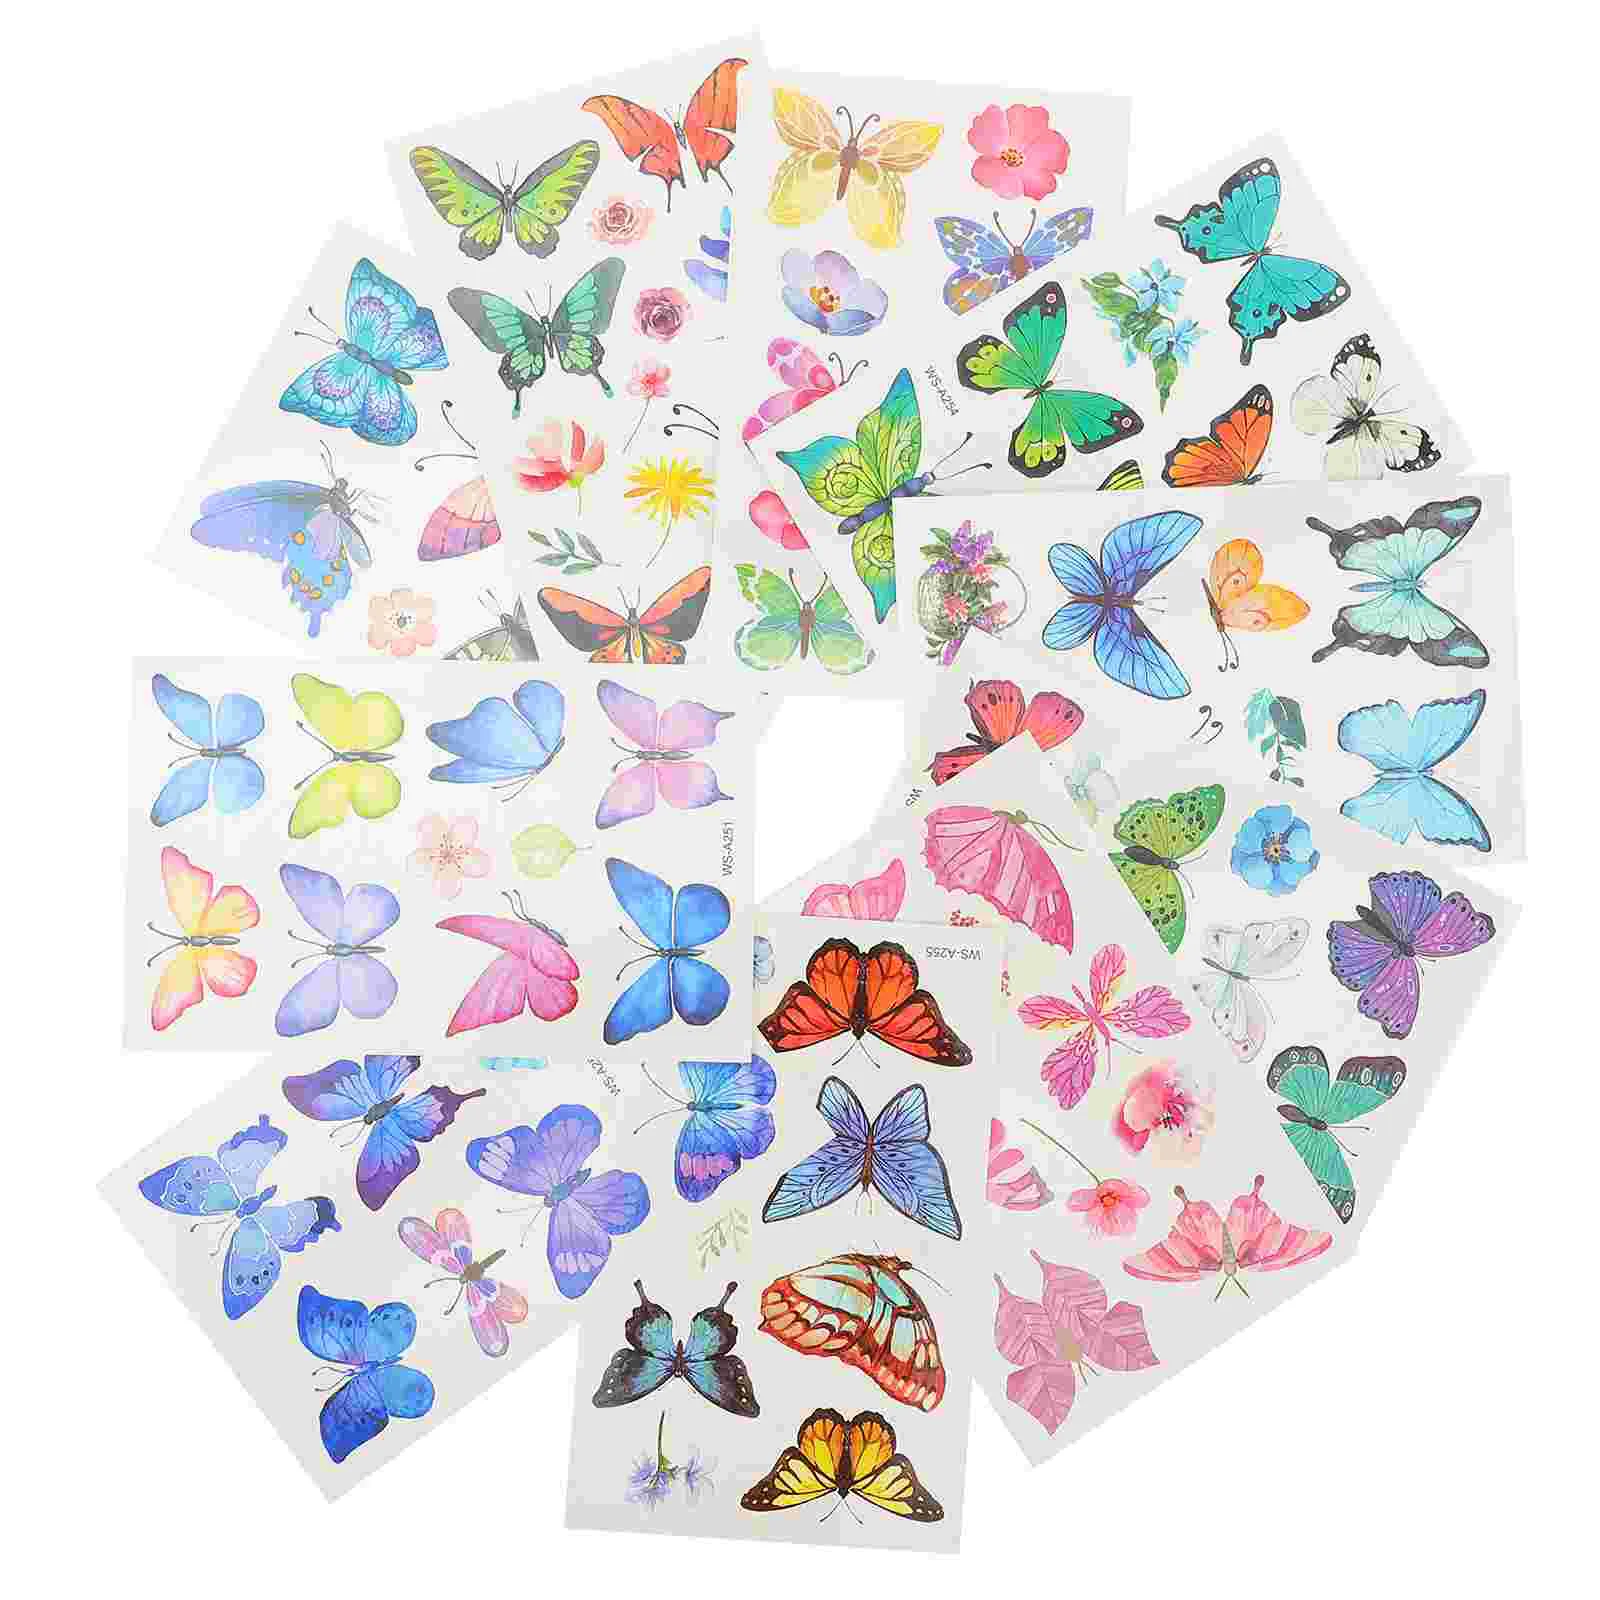 

20 Sheets Transfer Butterflies Temporary Tattoos Sticker Butterflies Party Favor